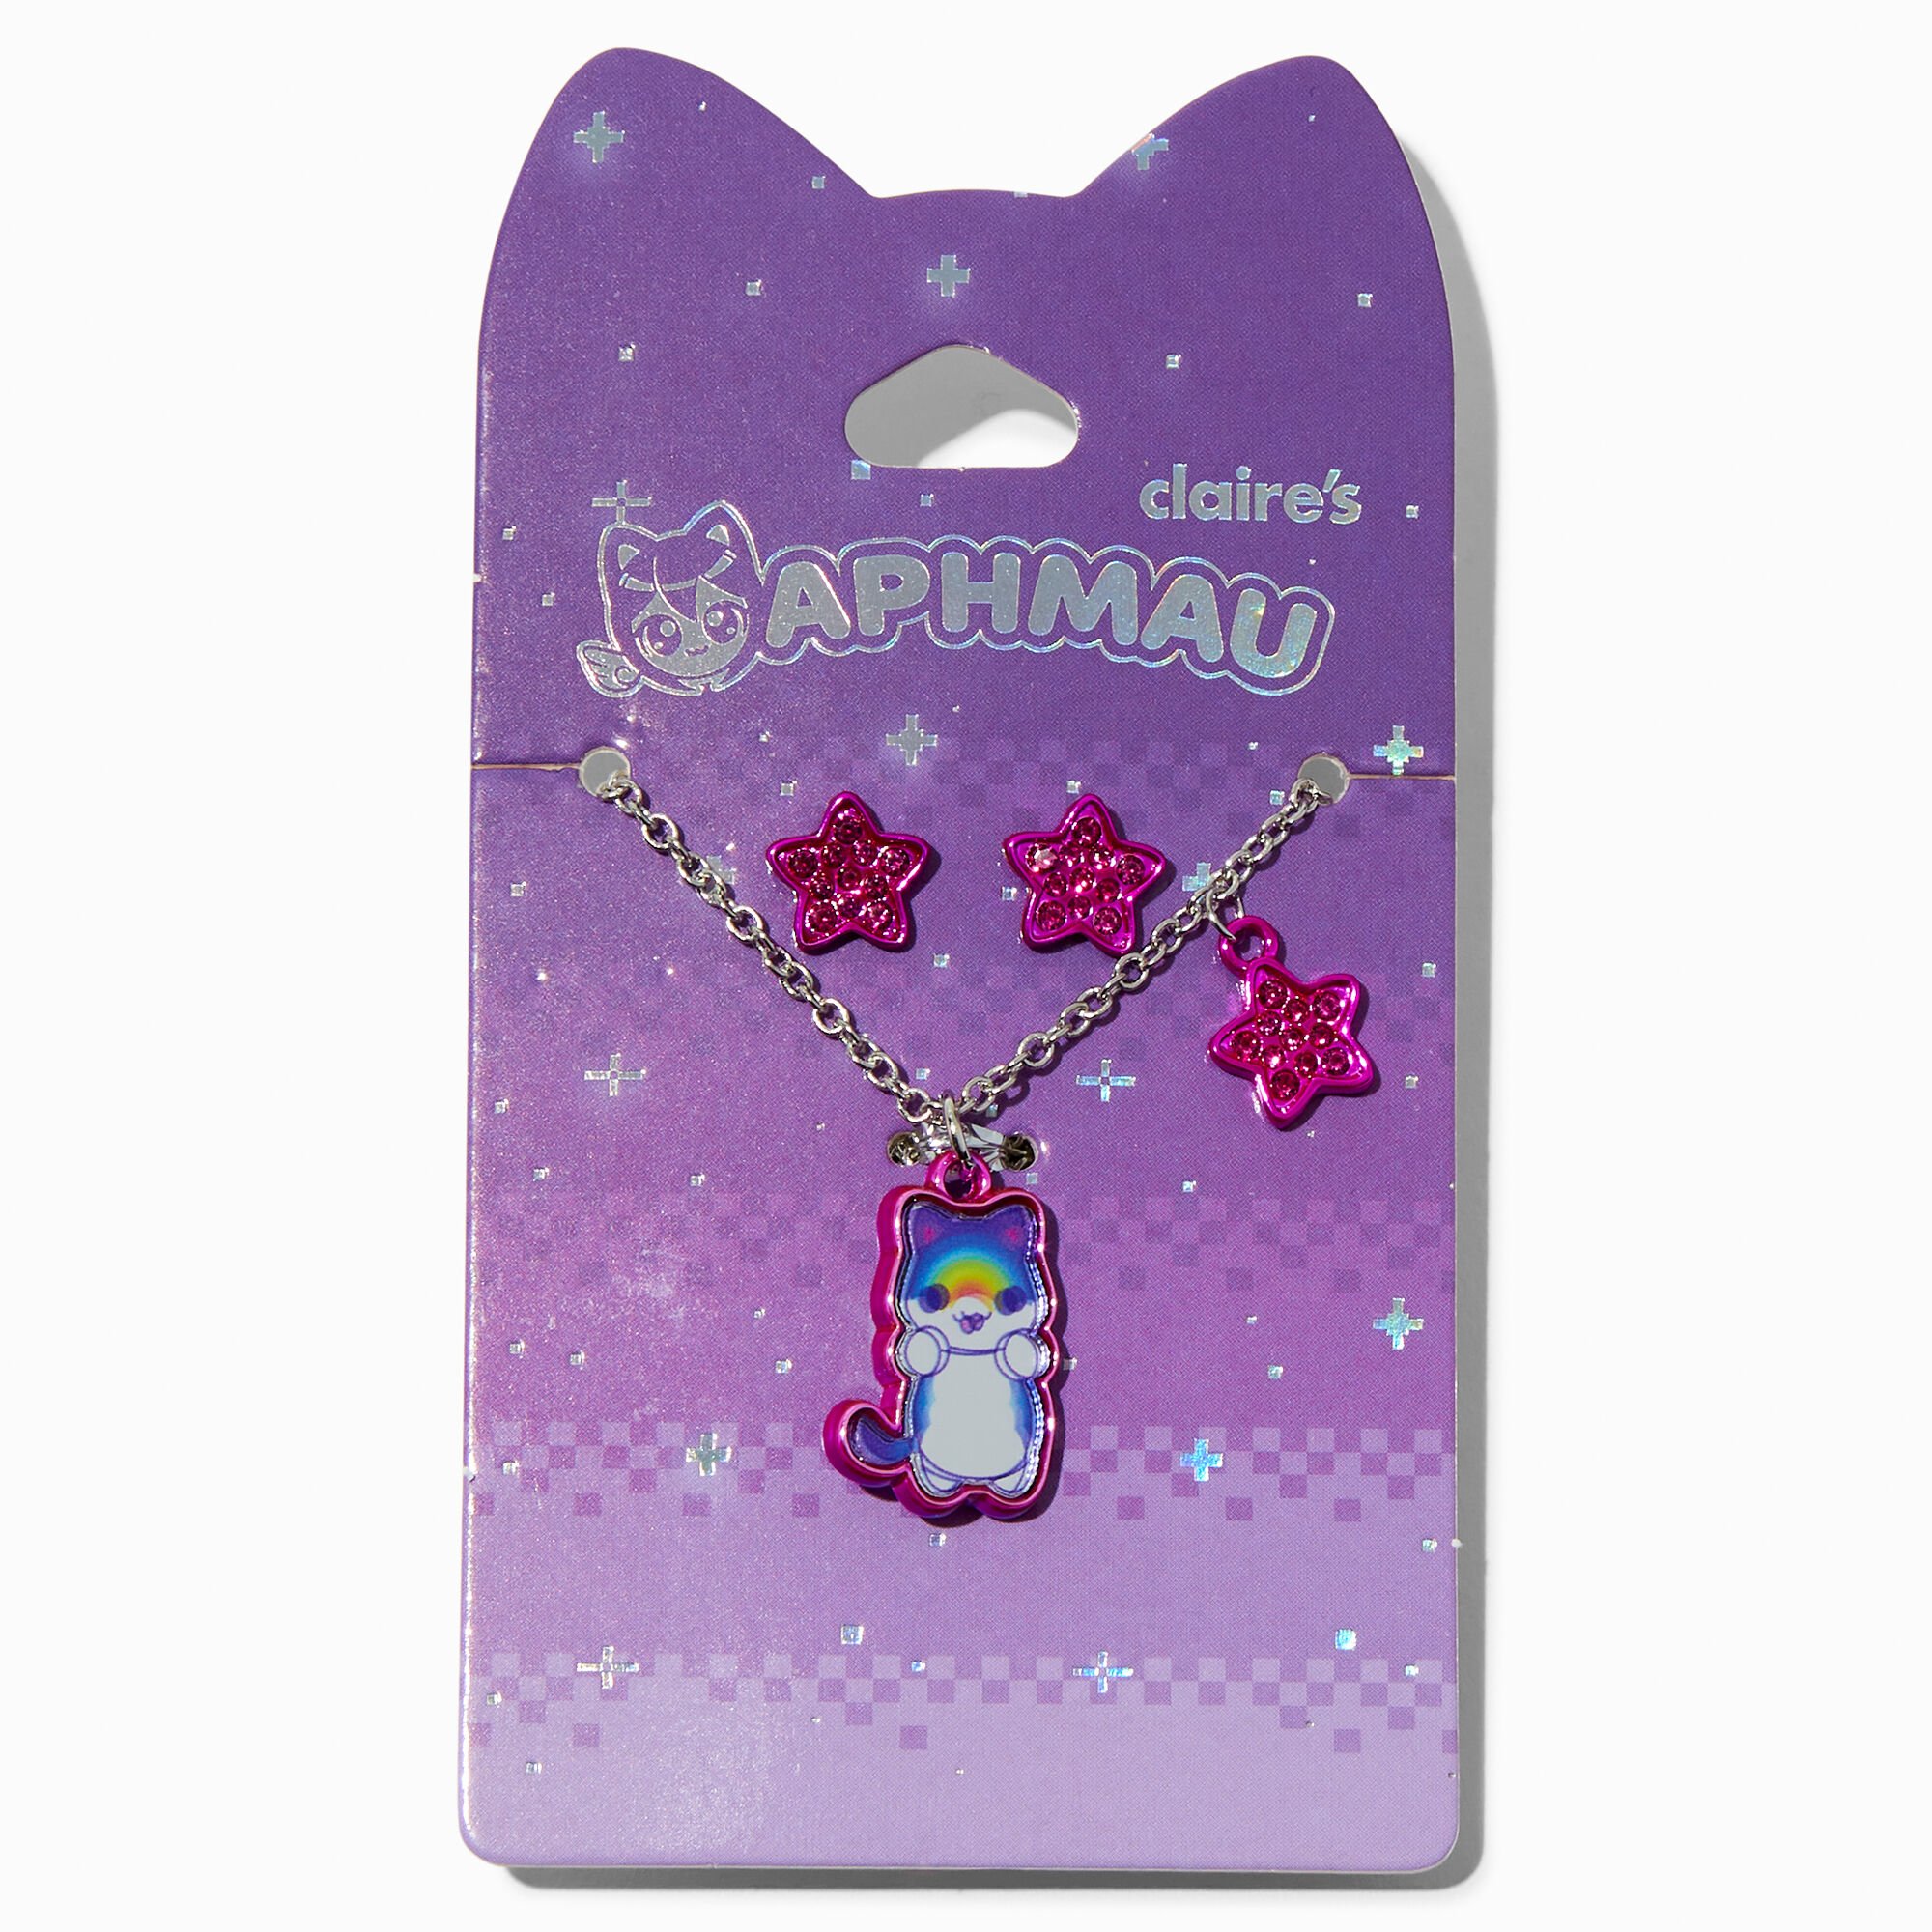 Claire's Boucles d'oreilles et collier chat Rainbow en exclusivité chez Claire’s Aphmau™ - Lot de 2